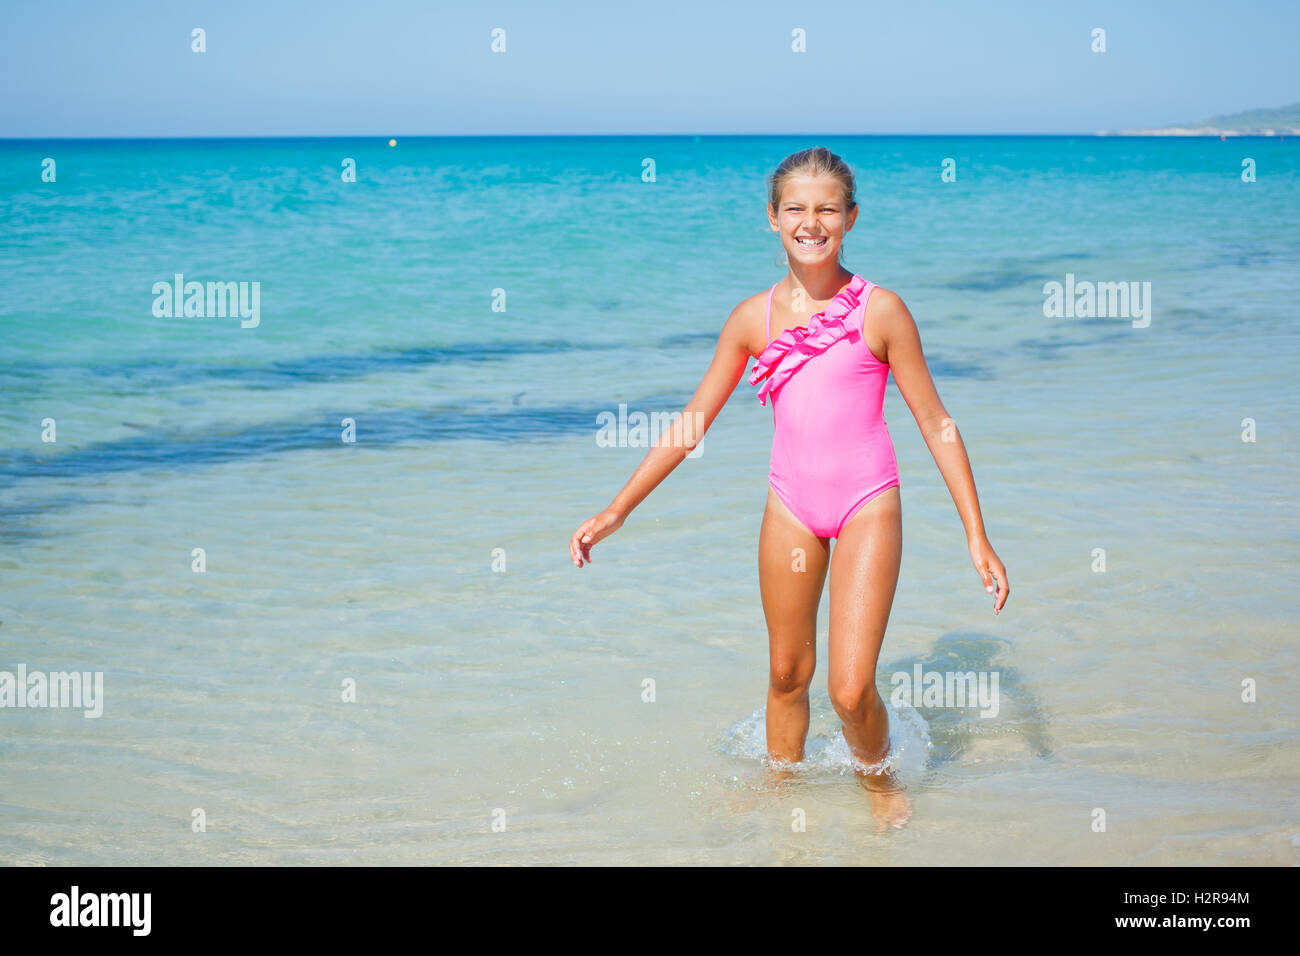 Cute girl on the beach Stock Photo